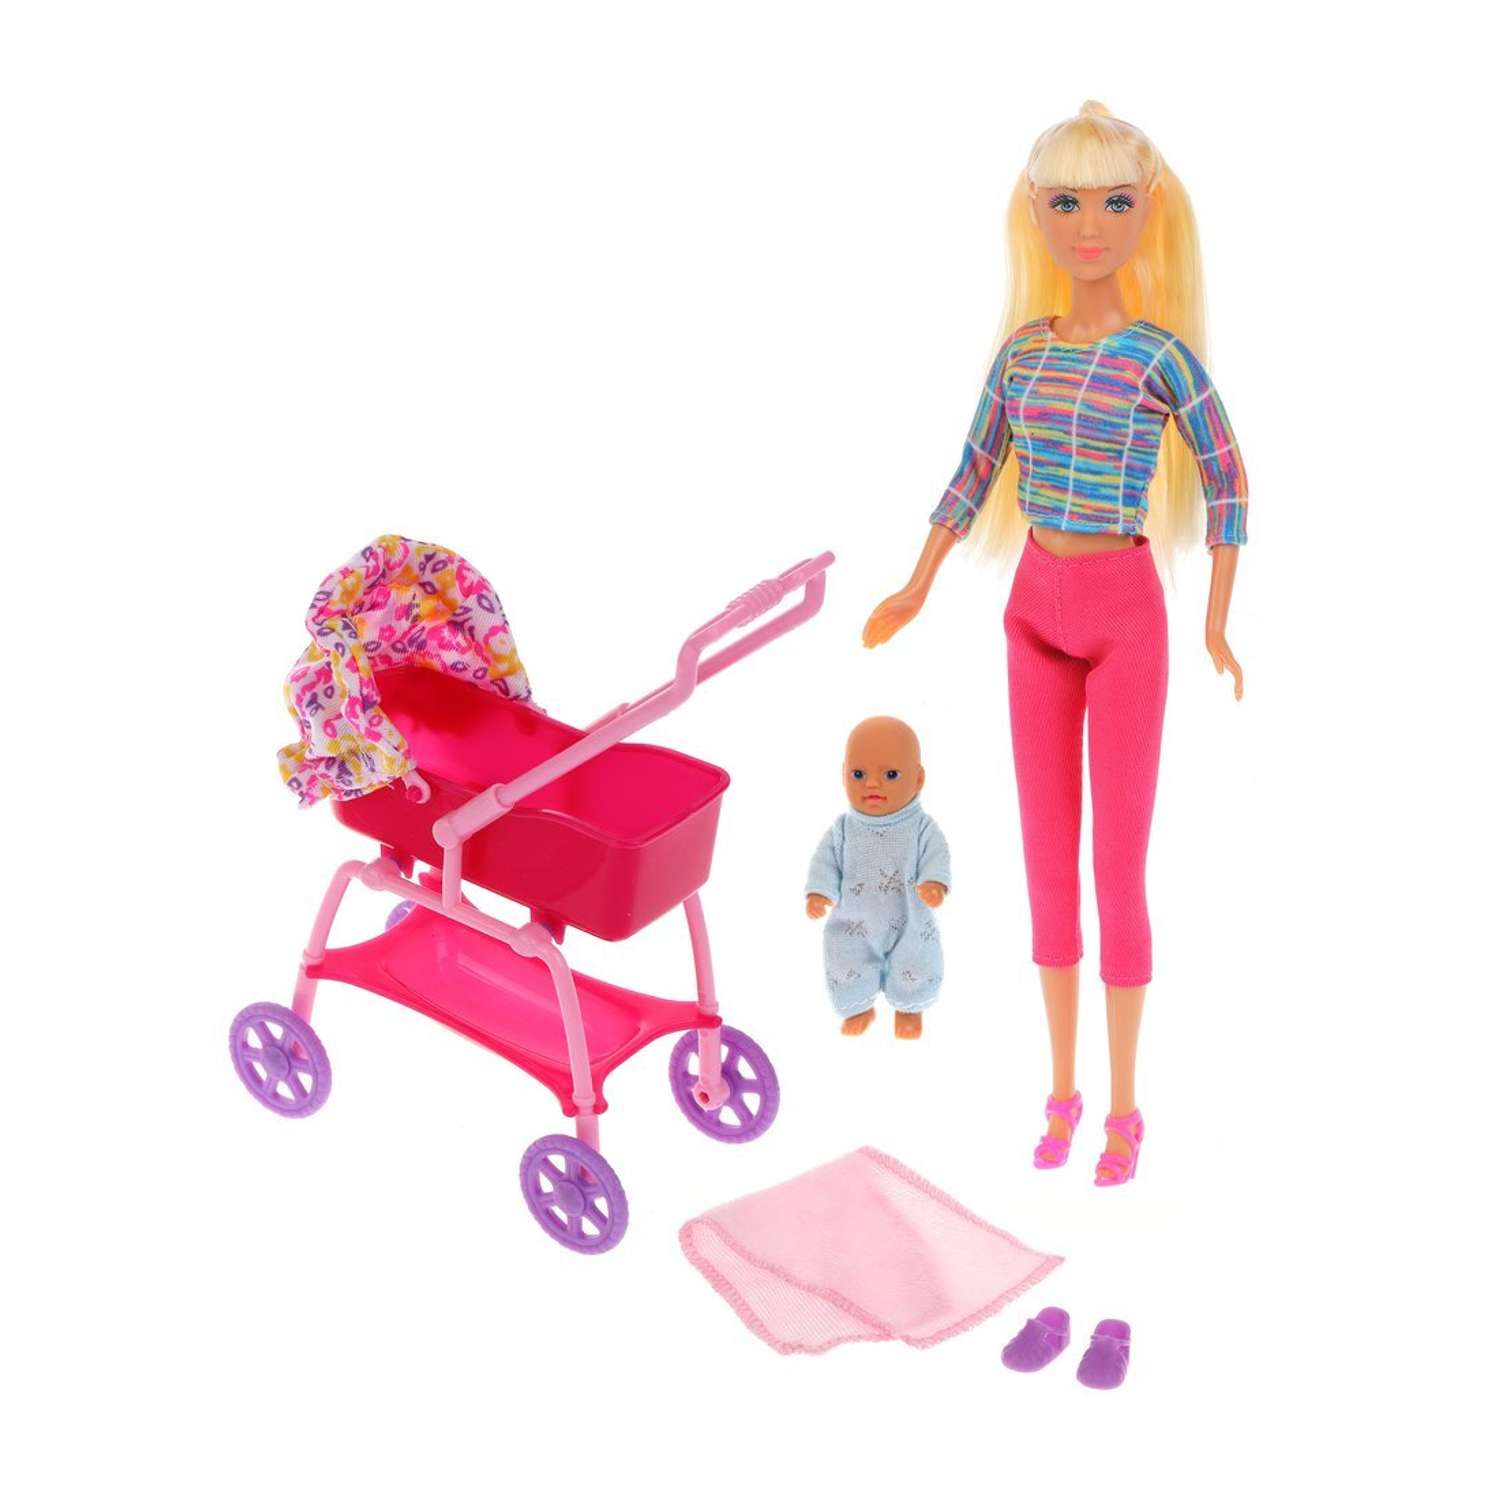 Кукла Lucy Наша Игрушка с коляской и малышом 4 аксессуара 612752 - фото 2